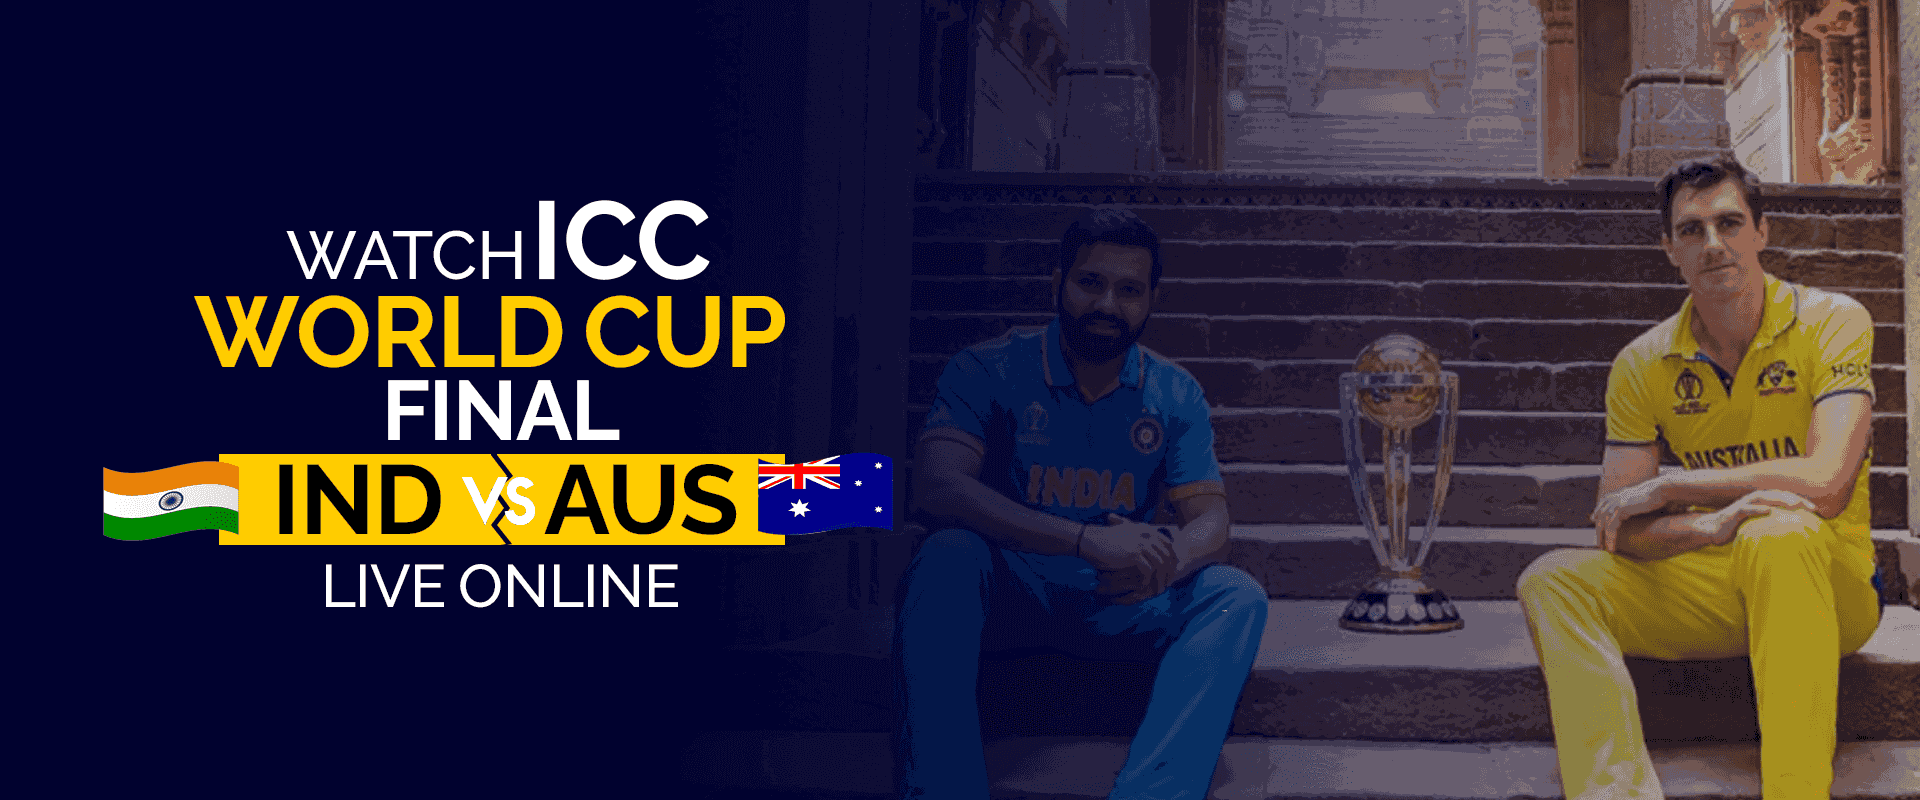 Assista à final mundial da ICC IND vs AUS ao vivo online